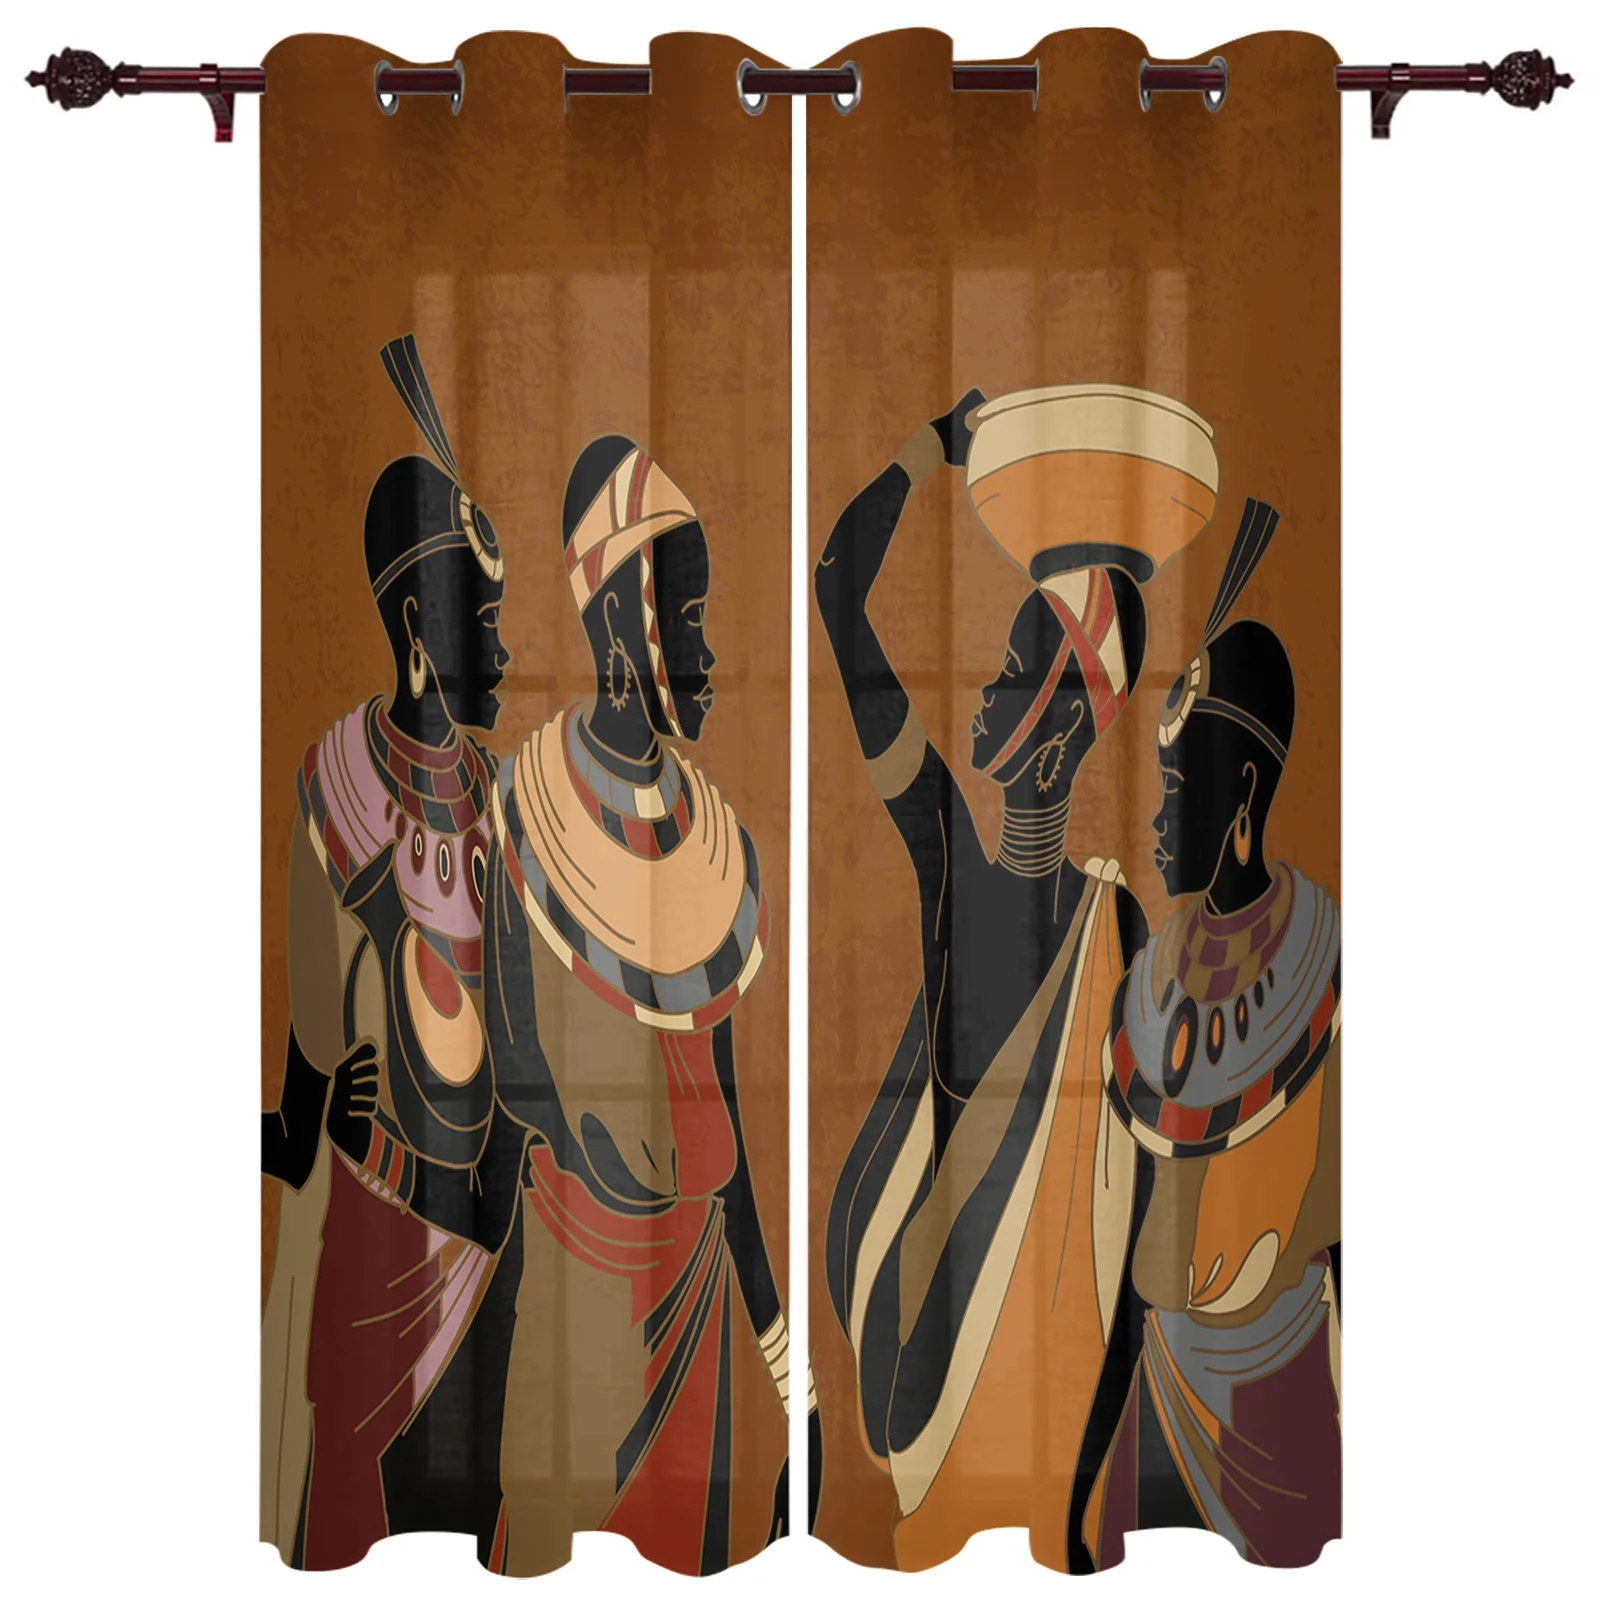 

Этнический стиль Африканский женский черный народный костюм современные шторы спальня кафе домашний декор роскошные шторы для гостиной Оконные Занавески